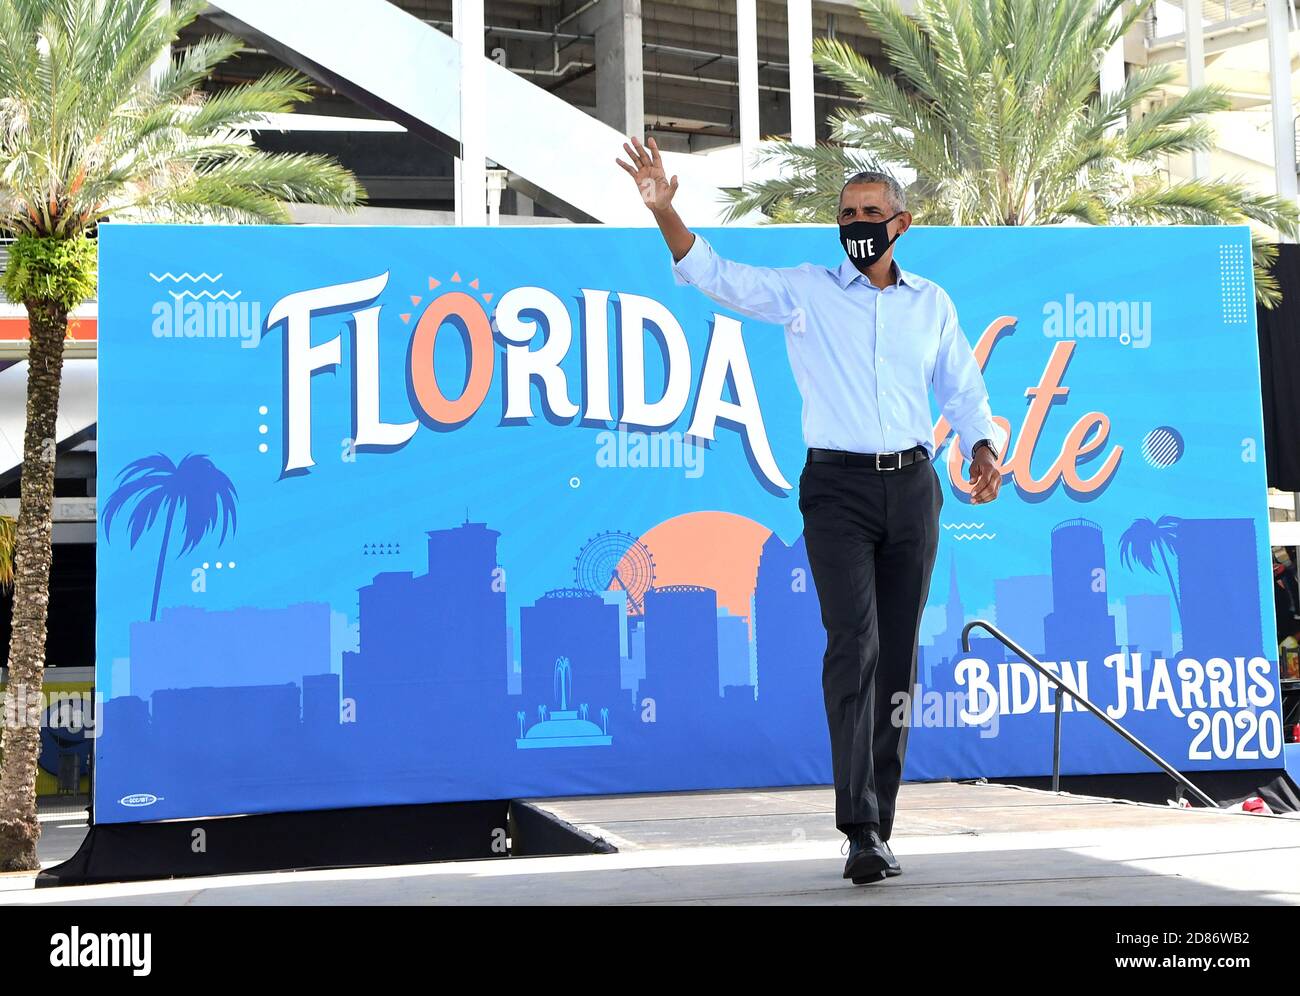 27. Oktober 2020 - Orlando, Florida, USA - der ehemalige US-Präsident Barack Obama winkt, als er die Bühne nimmt, um den demokratischen Präsidentschaftskandidaten Joe Biden während einer Drive-in-Kundgebung am 27. Oktober 2020 in Orlando, Florida zu unterstützen. Obama kämpft für seinen ehemaligen Vizepräsidenten vor der Wahl am 3. November. (Paul Hennessy/Alamy) Stockfoto